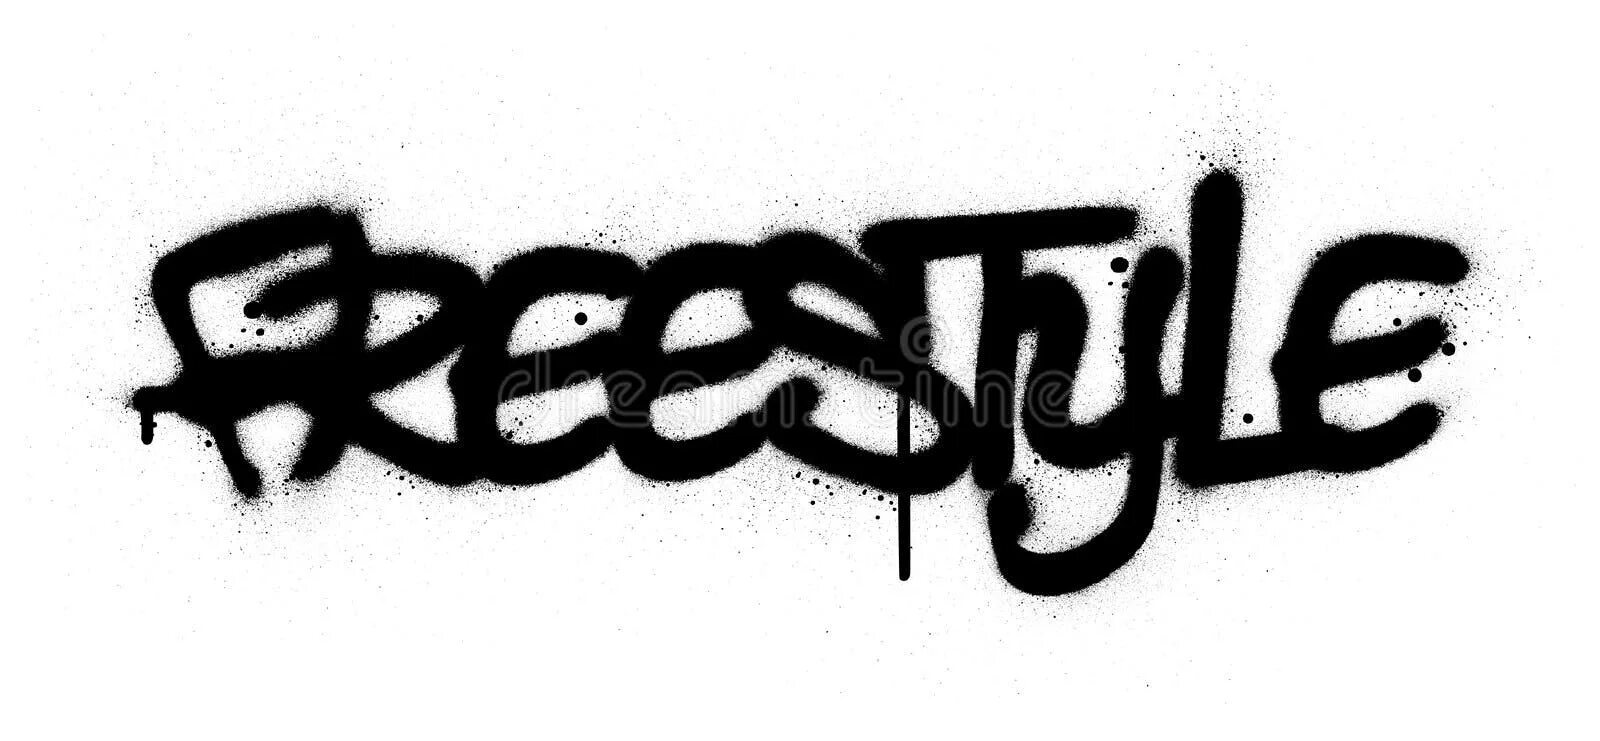 Team freestyle текст. Фристайл граффити. Freestyle слово. Граффити фреестиль. Граффити Свобода слова.